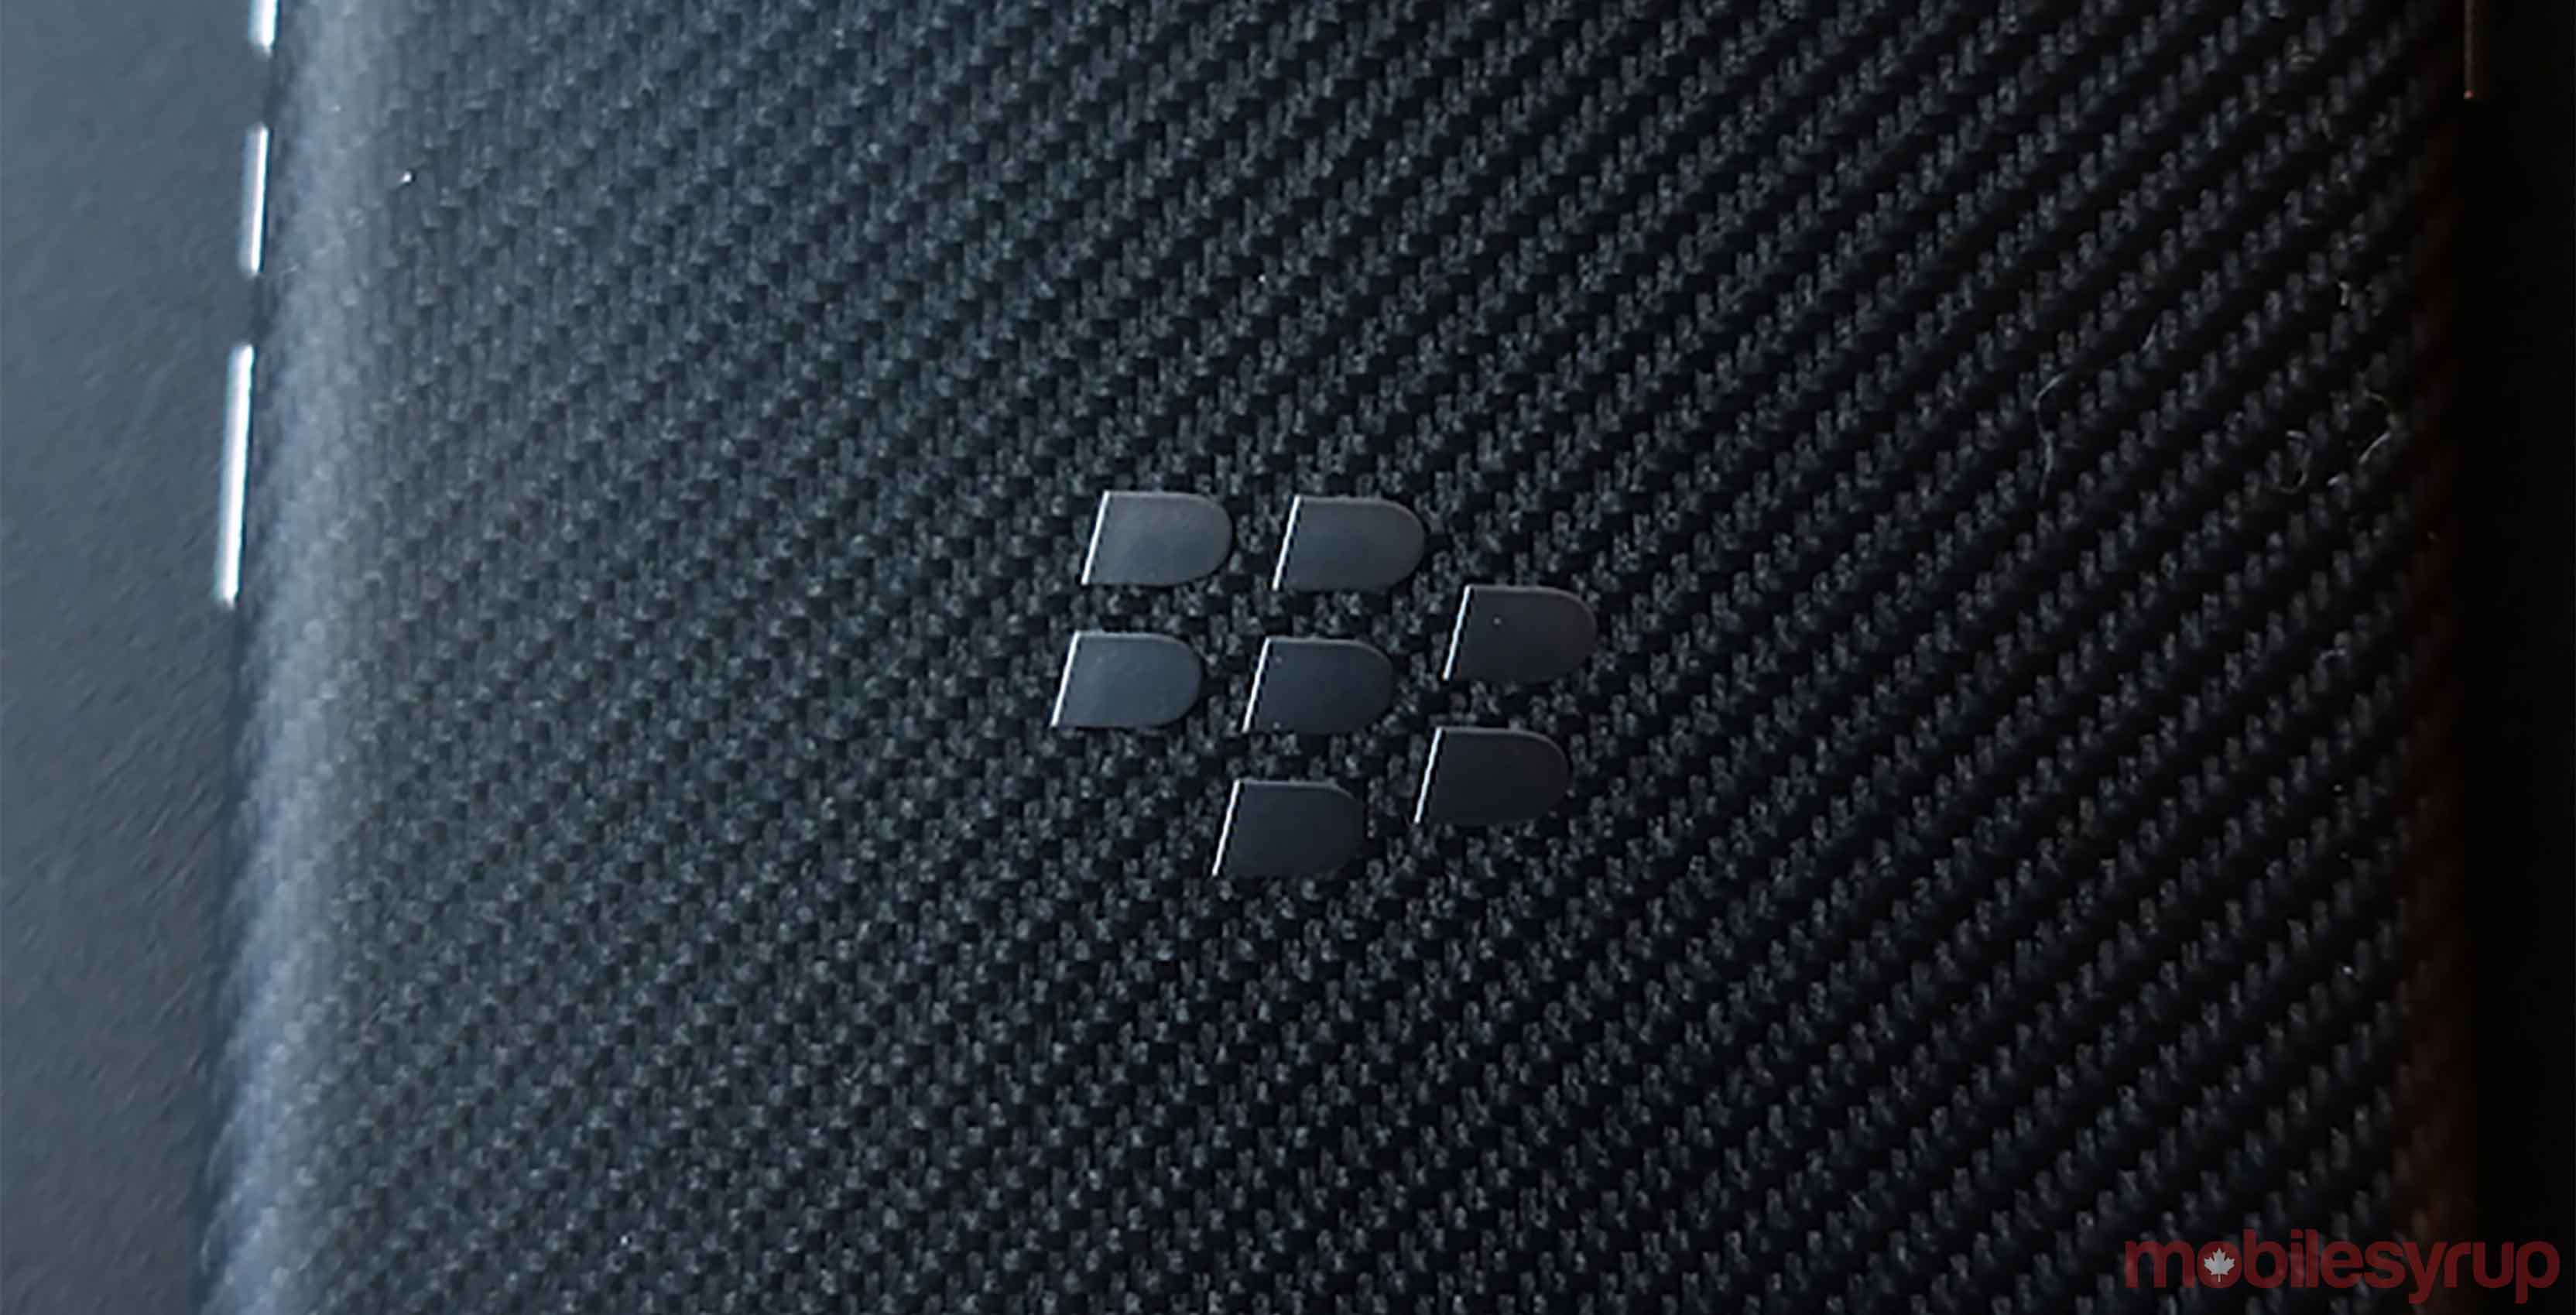 BlackBerry Logo